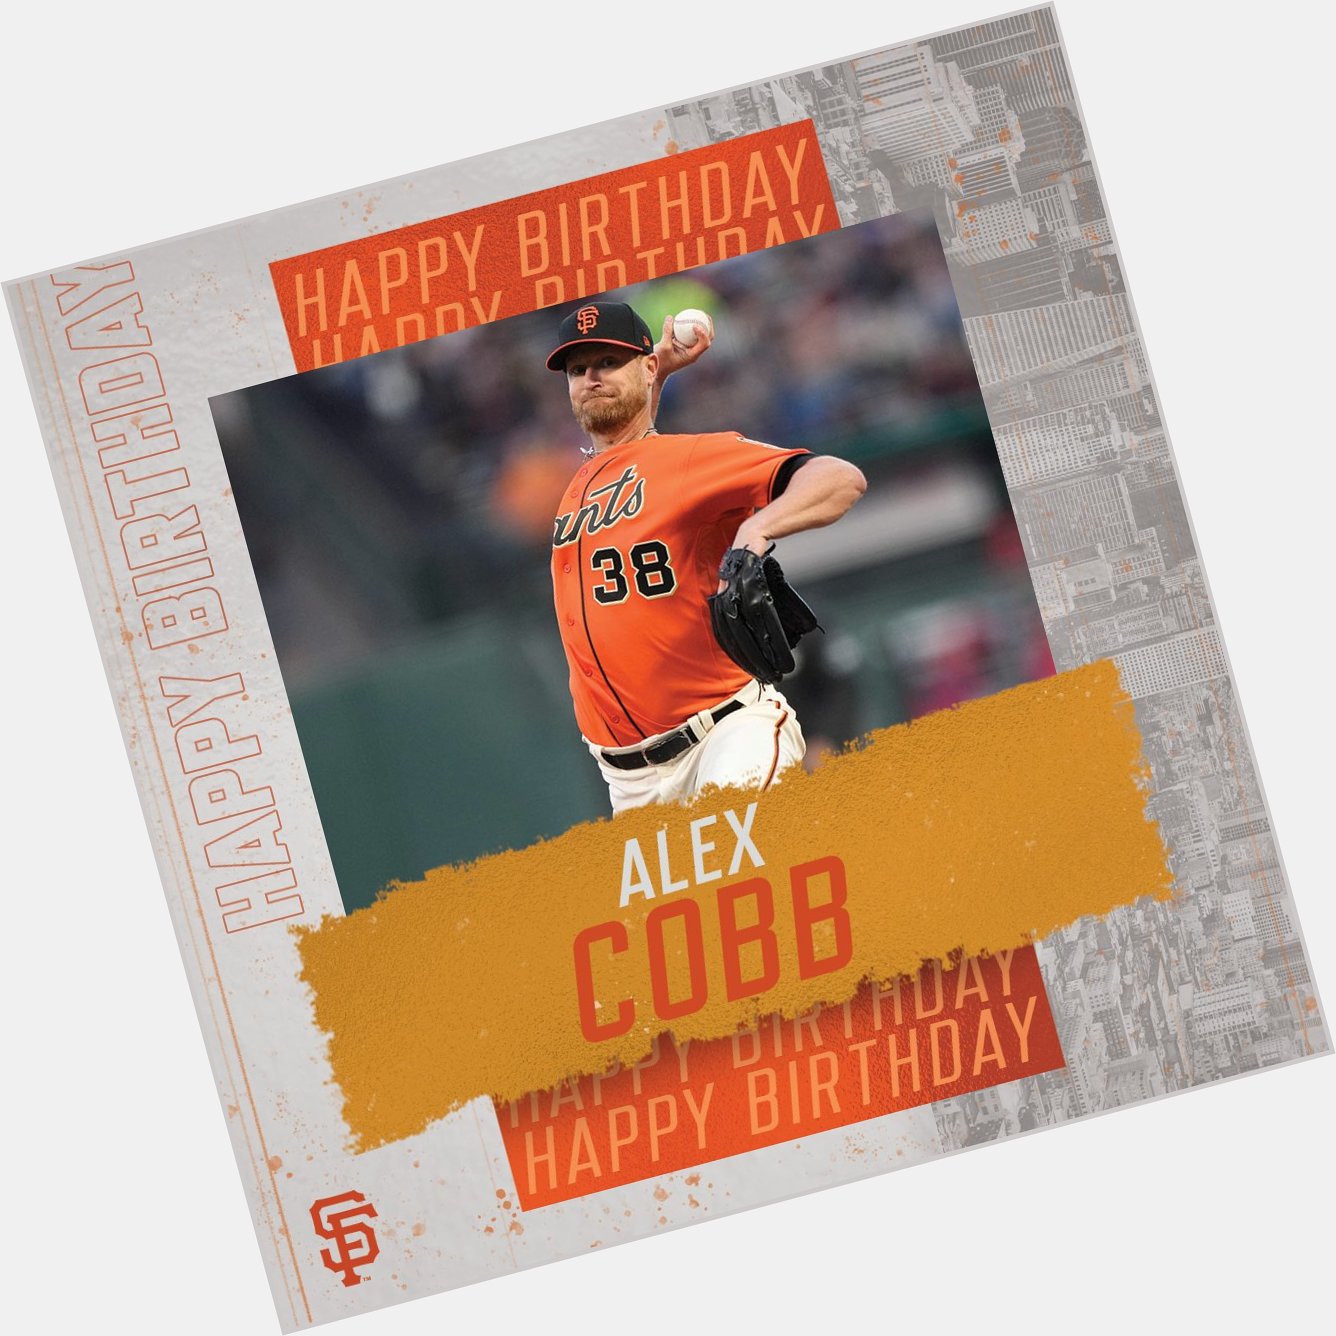 A very happy birthday to Alex Cobb 